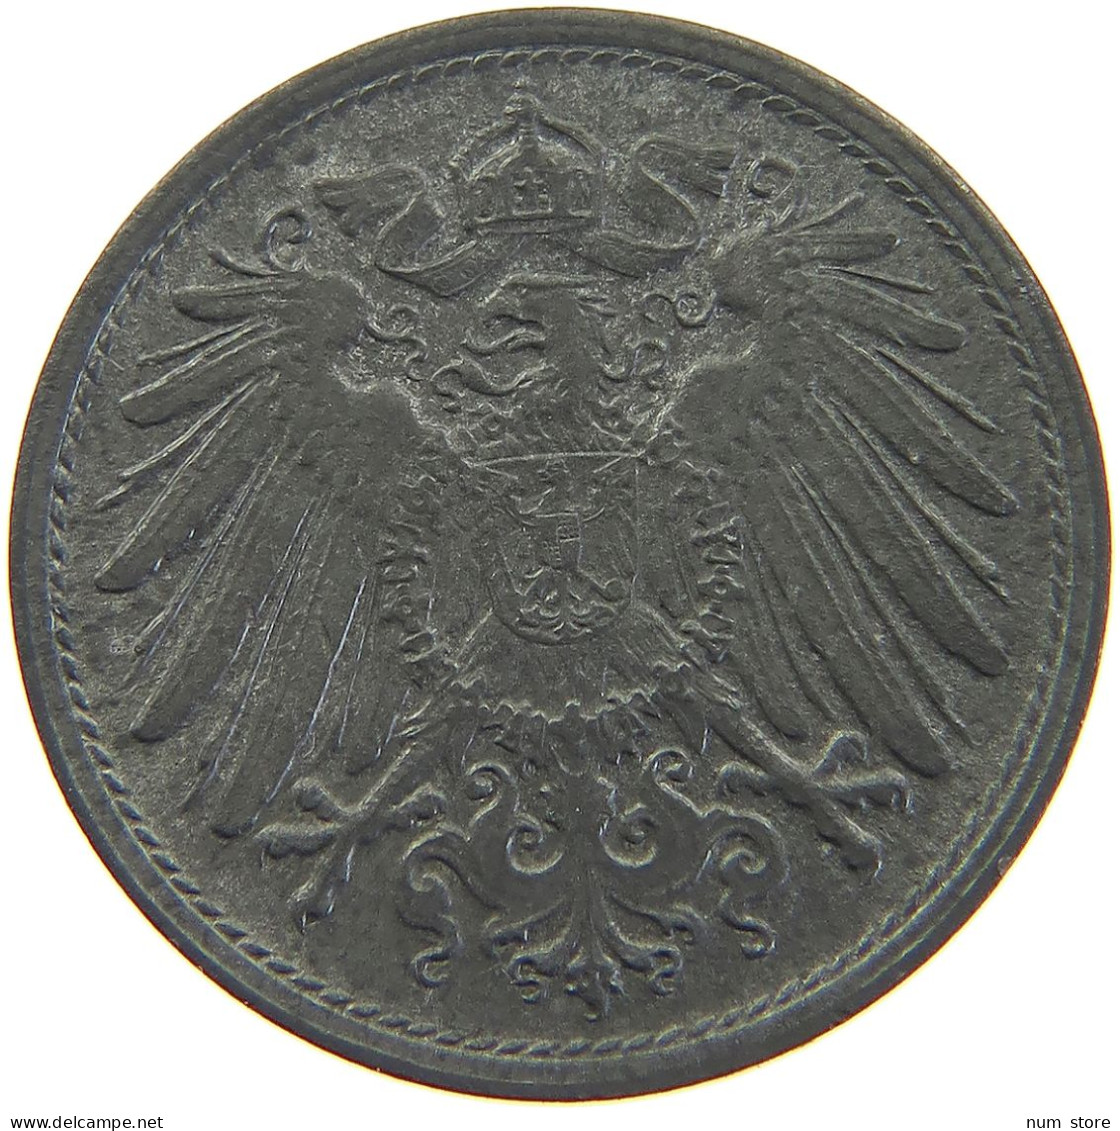 DEUTSCHES REICH 10 PFENNIG 1920  #MA 102793 - 10 Rentenpfennig & 10 Reichspfennig